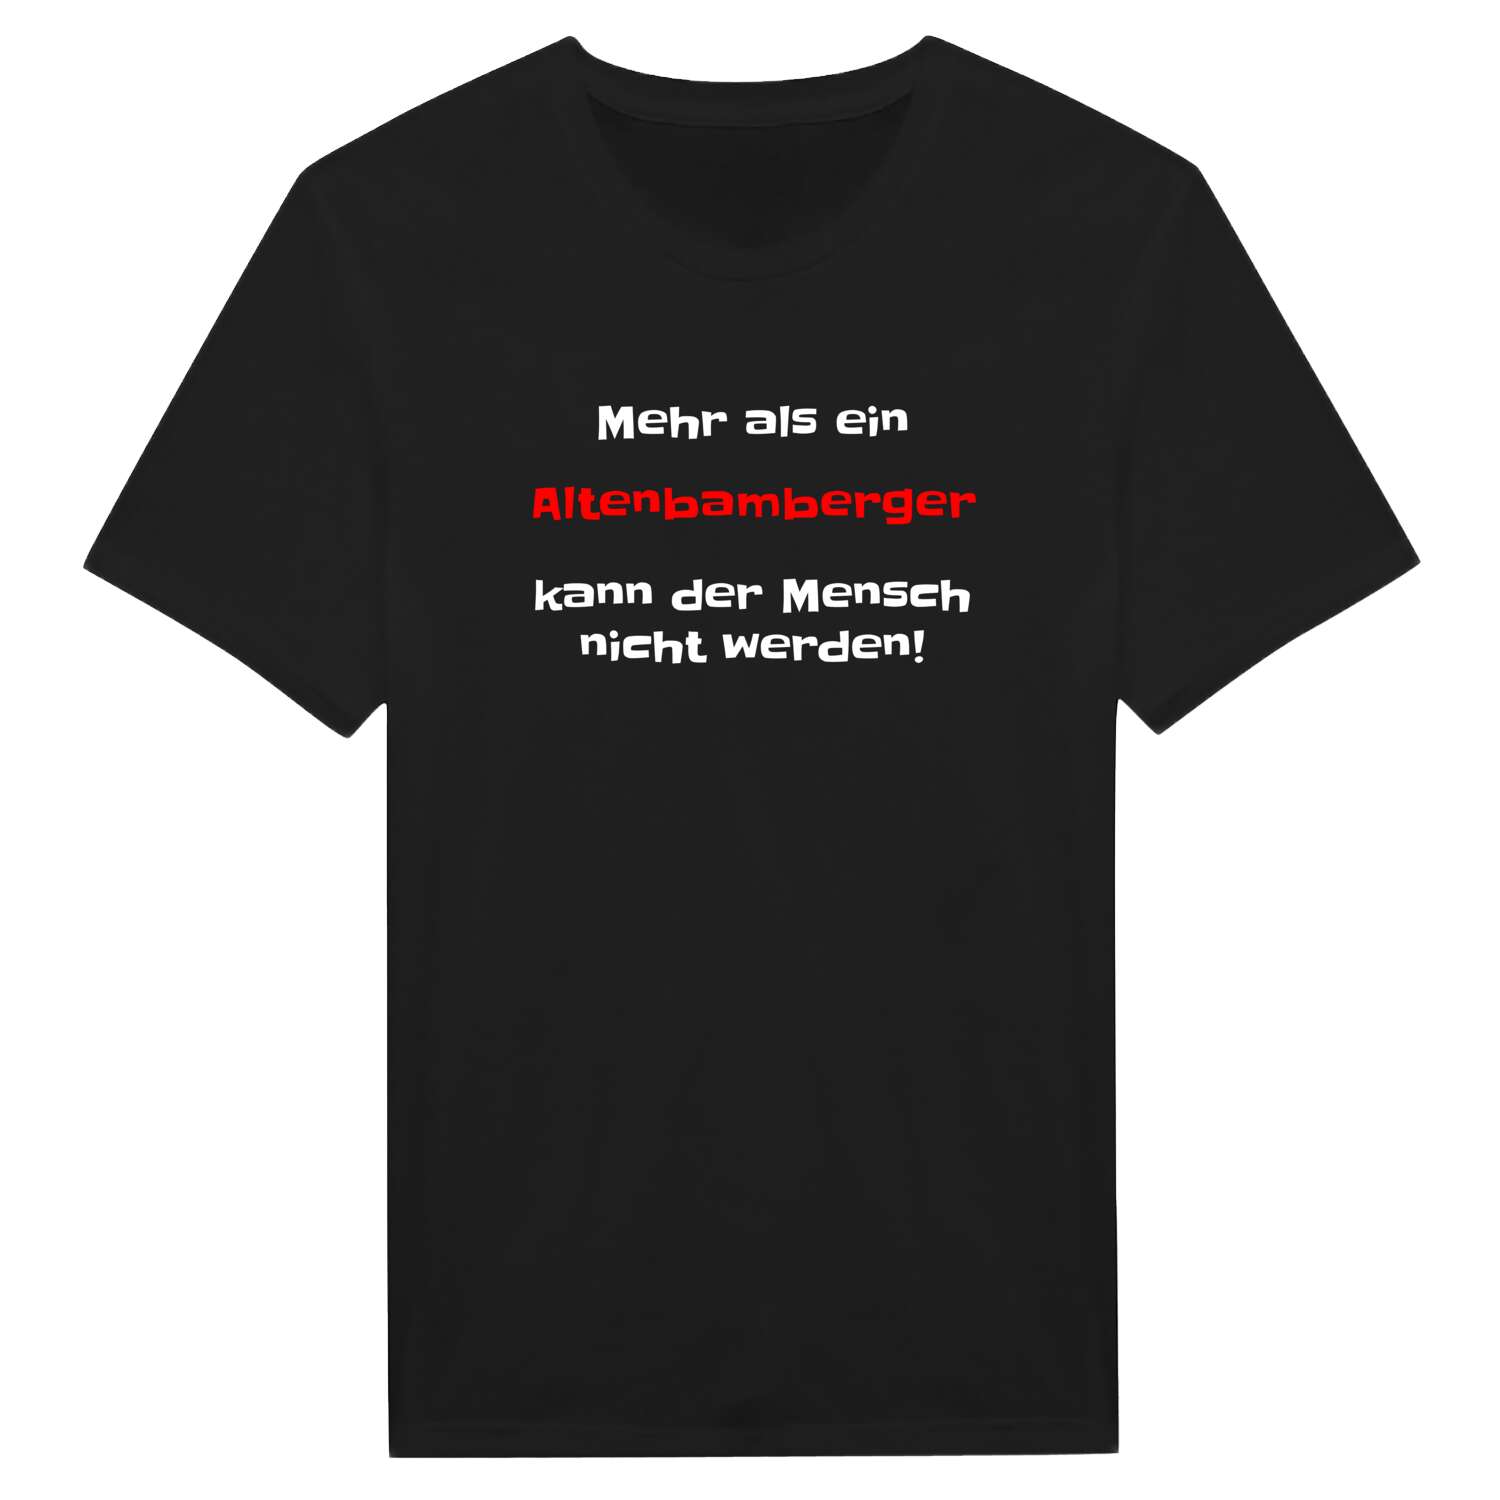 Altenbamberg T-Shirt »Mehr als ein«